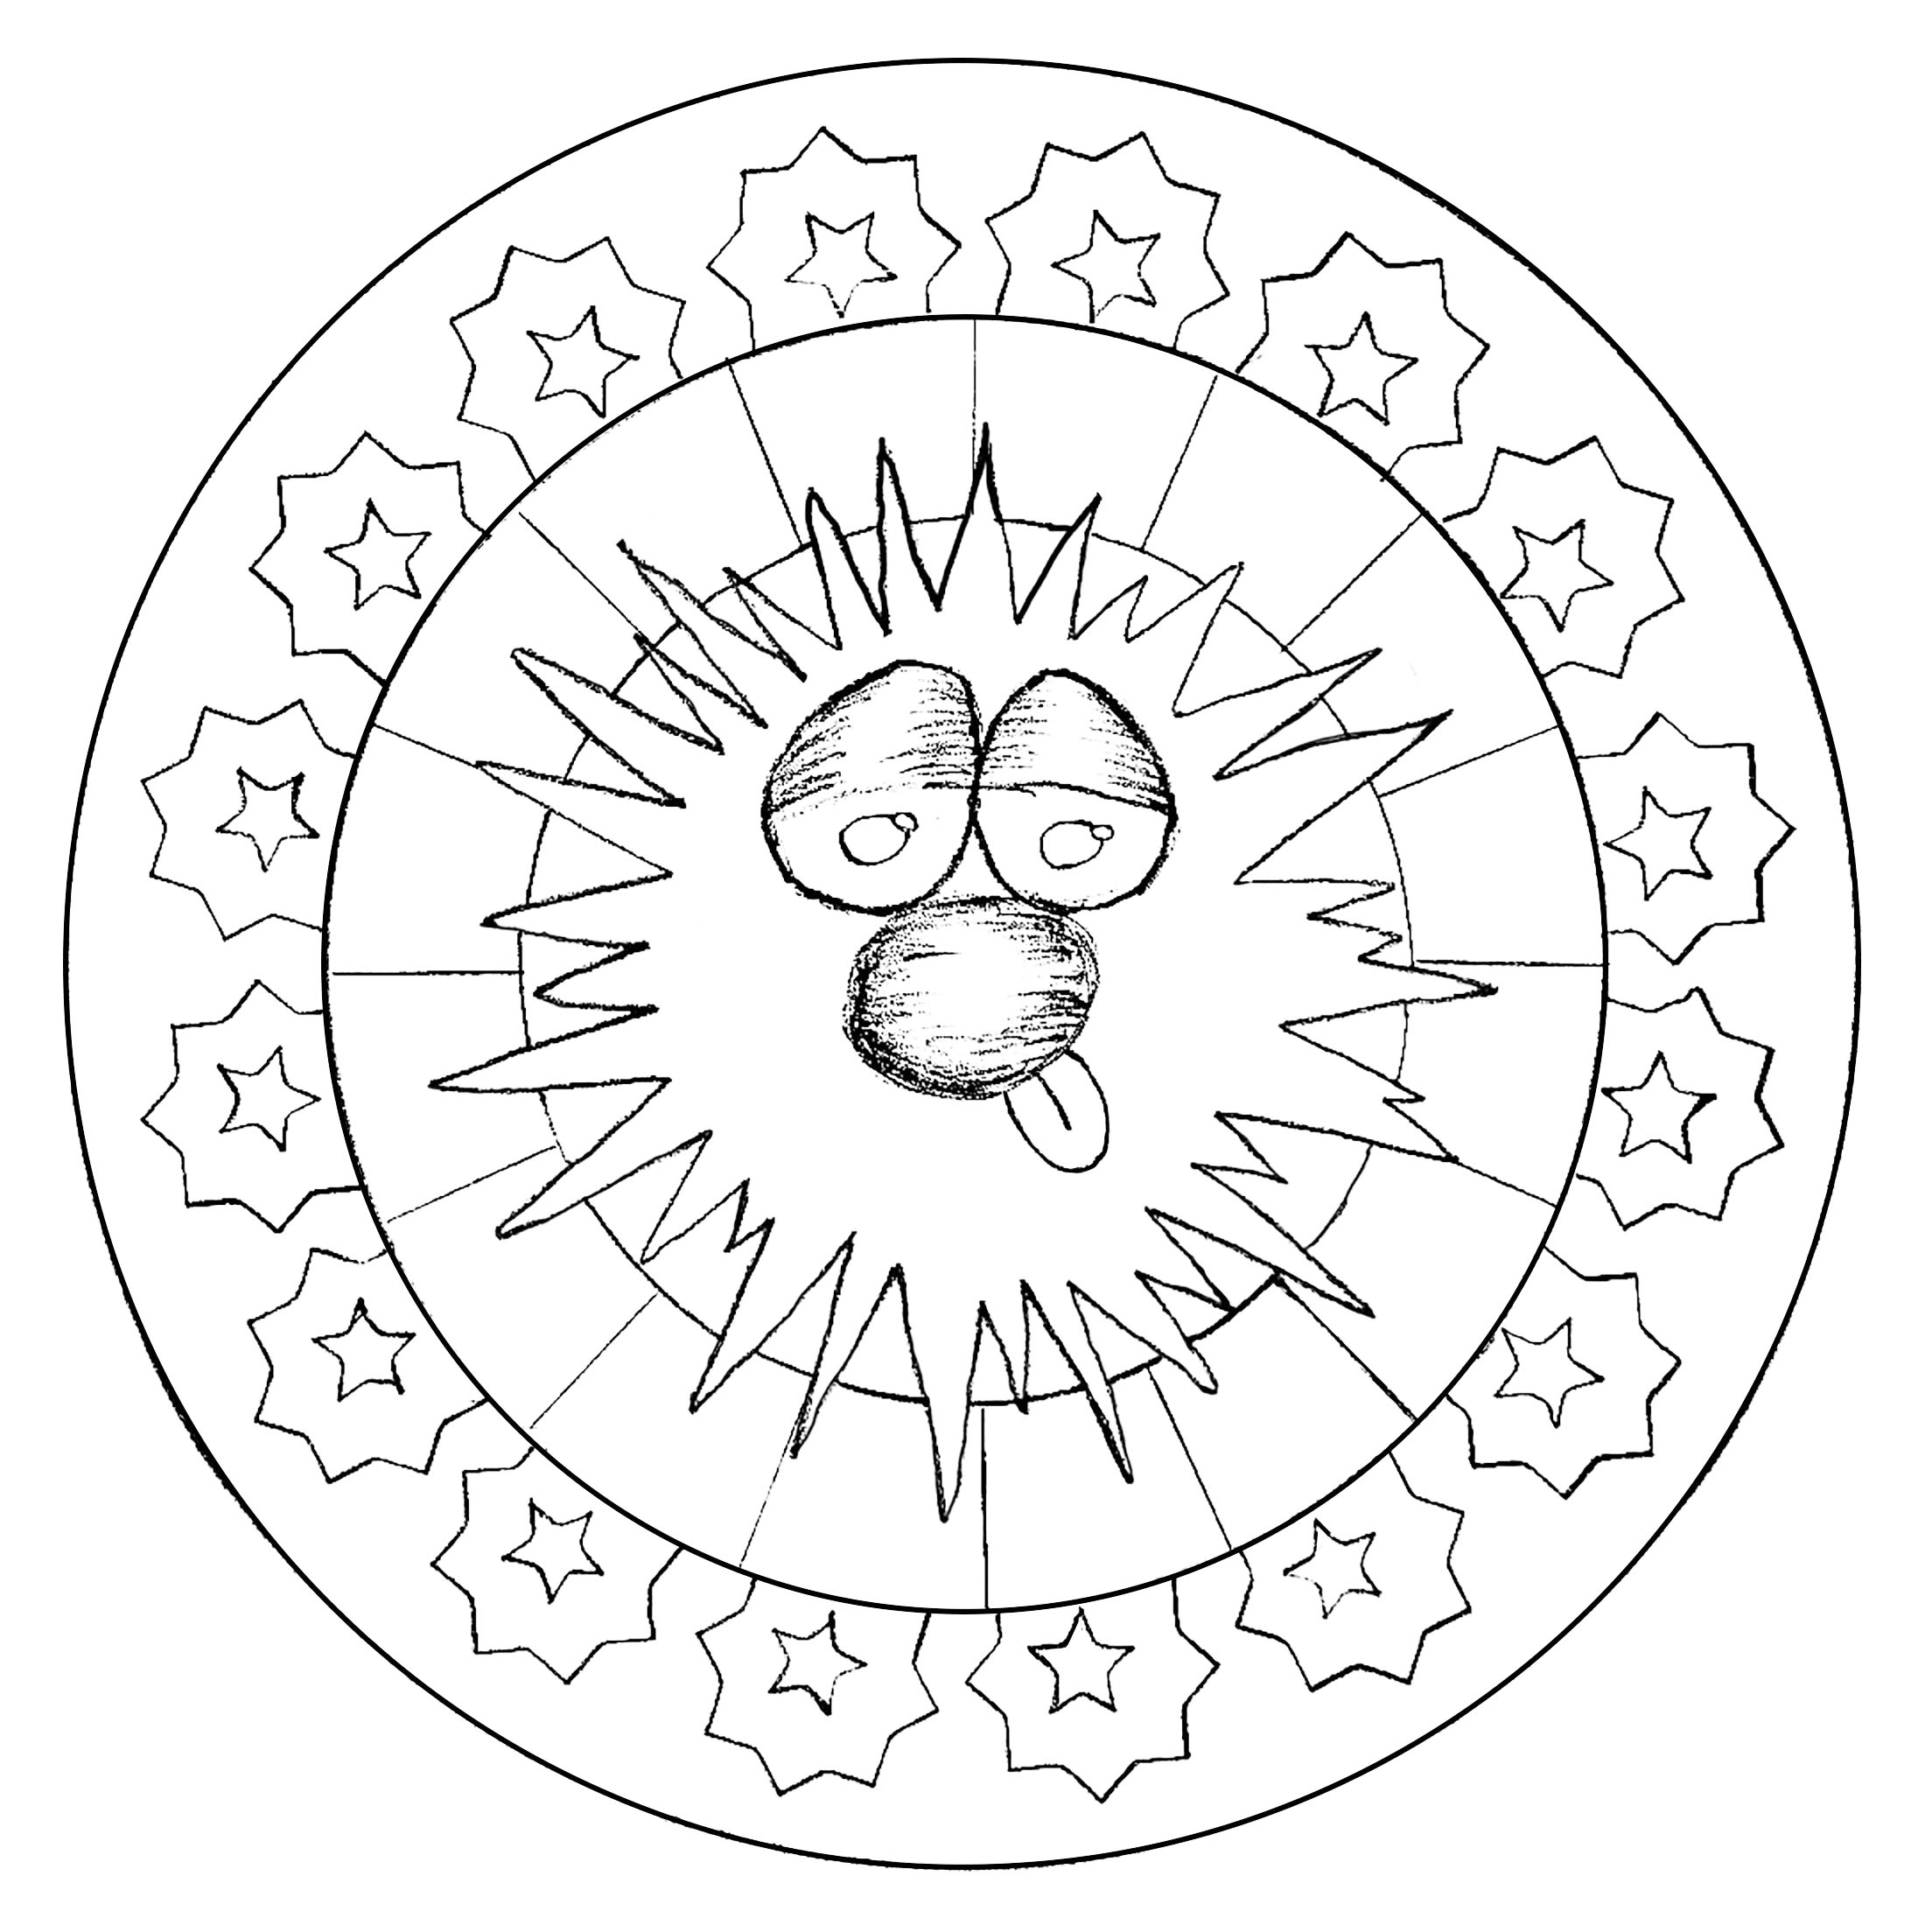 Peu de détails à colorier dans ce Mandala assez simple et drôle, qui conviendra aux enfants et aux adultes qui recherchent de la simplicité.